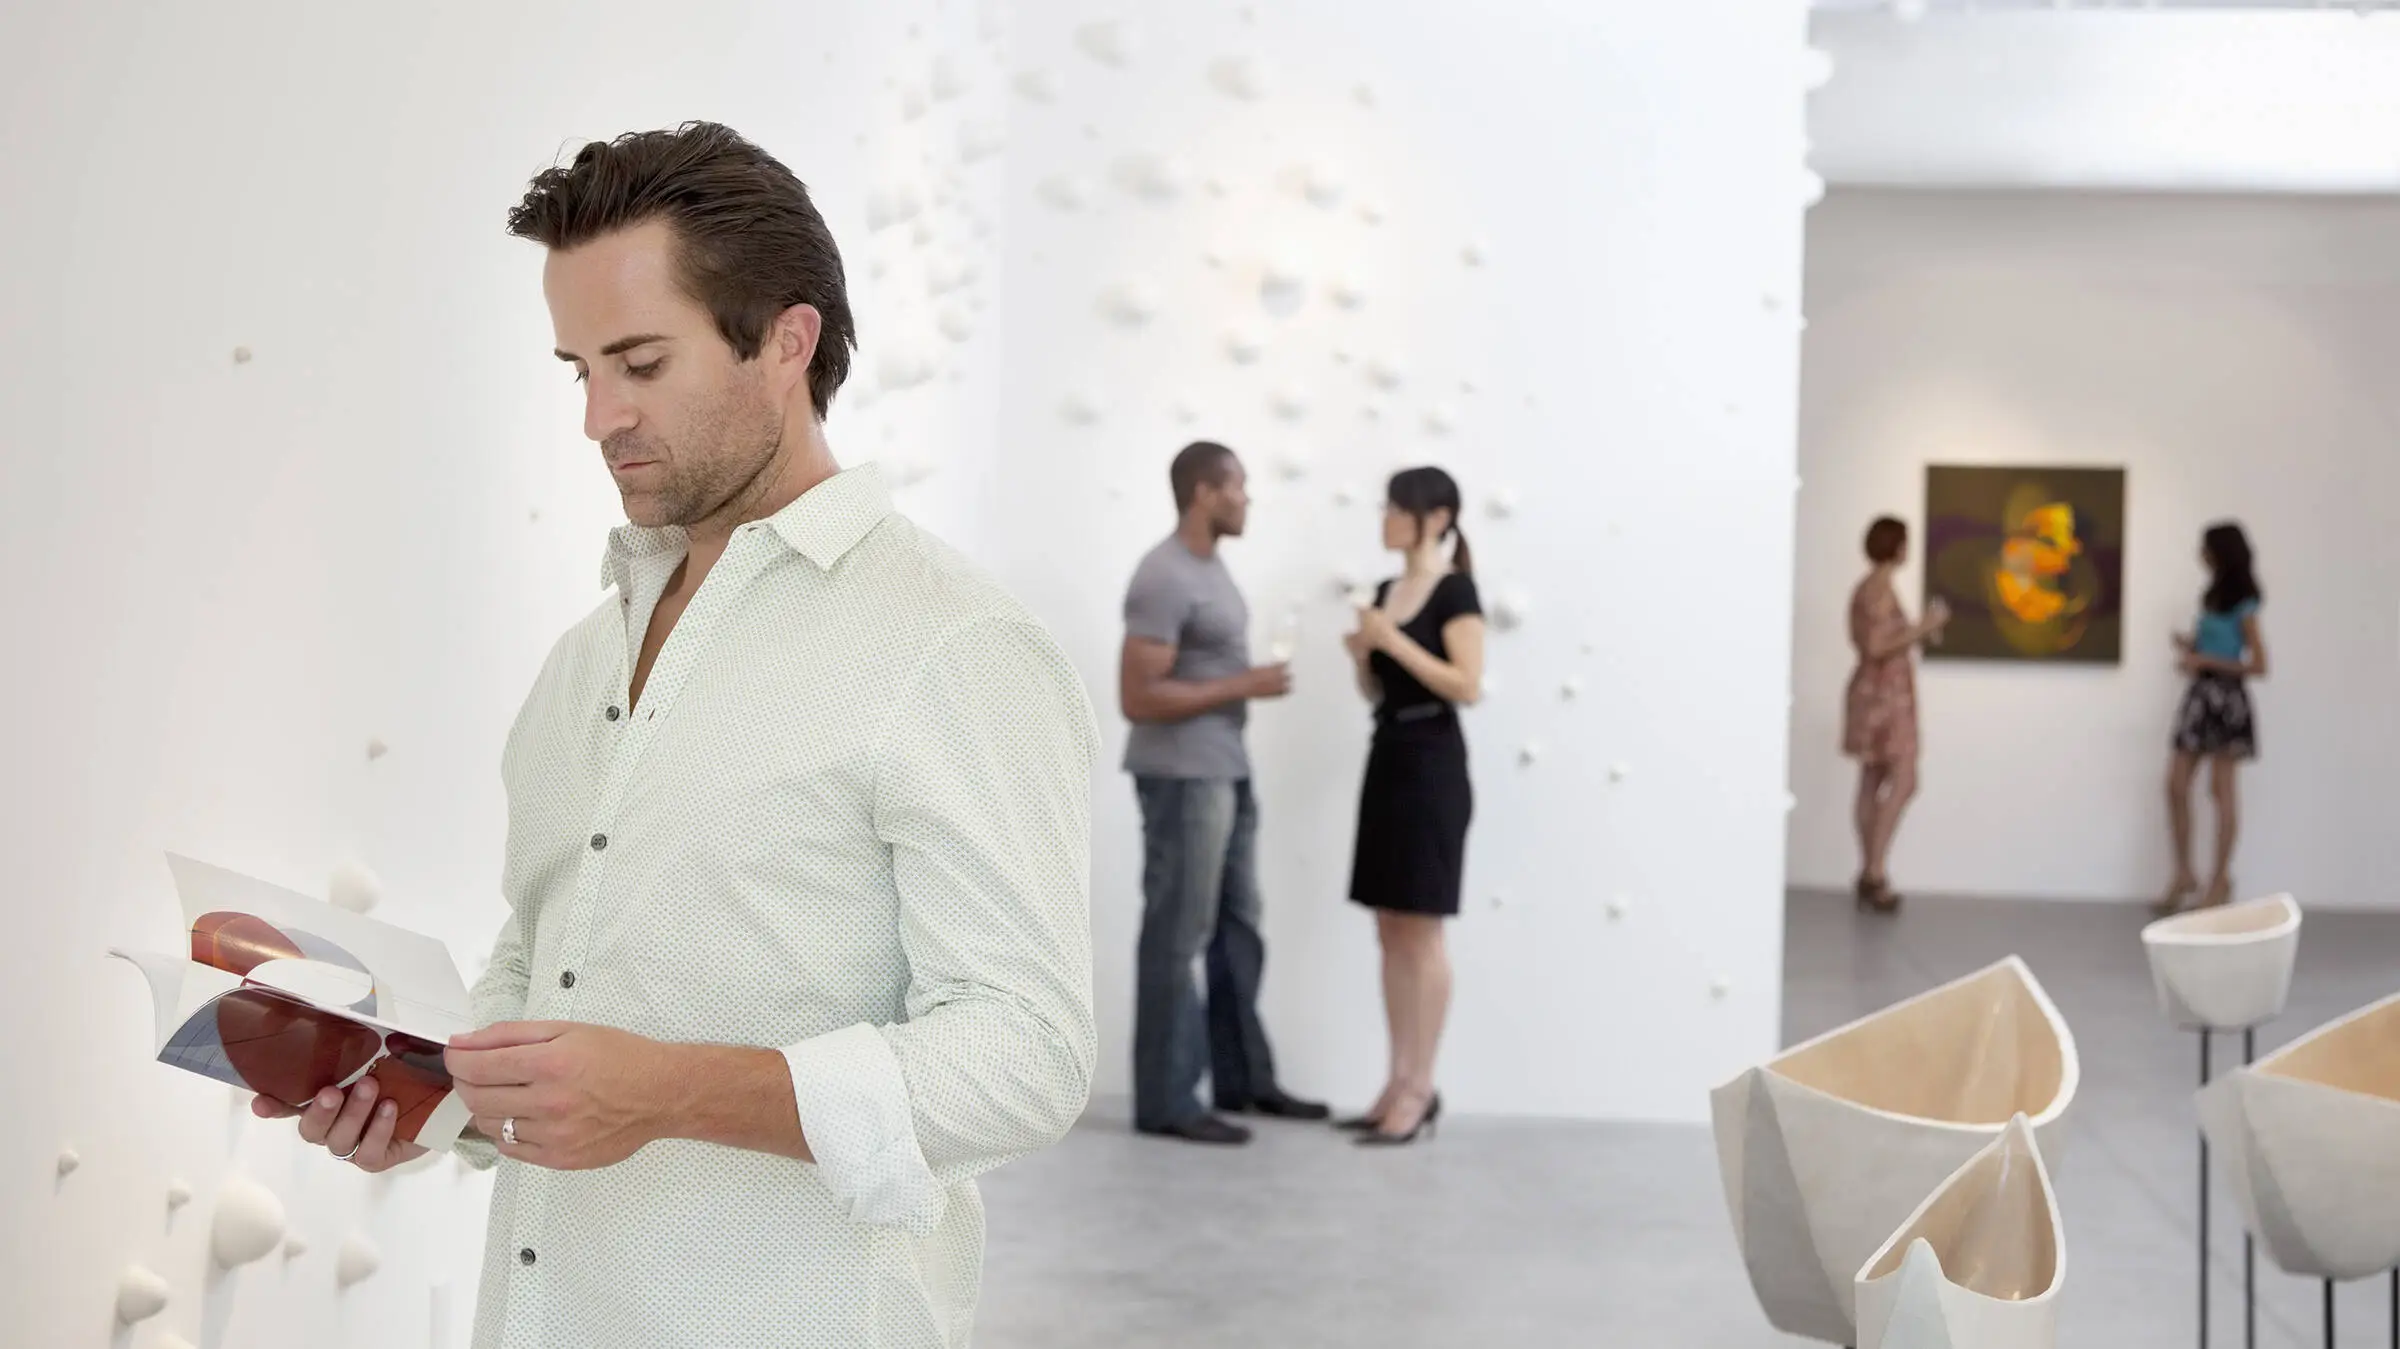 Ein Mann im weißen Hemd schaut sich einen Prospekt im Museum an. Im Hintergrund sind Menschen verschwommen.